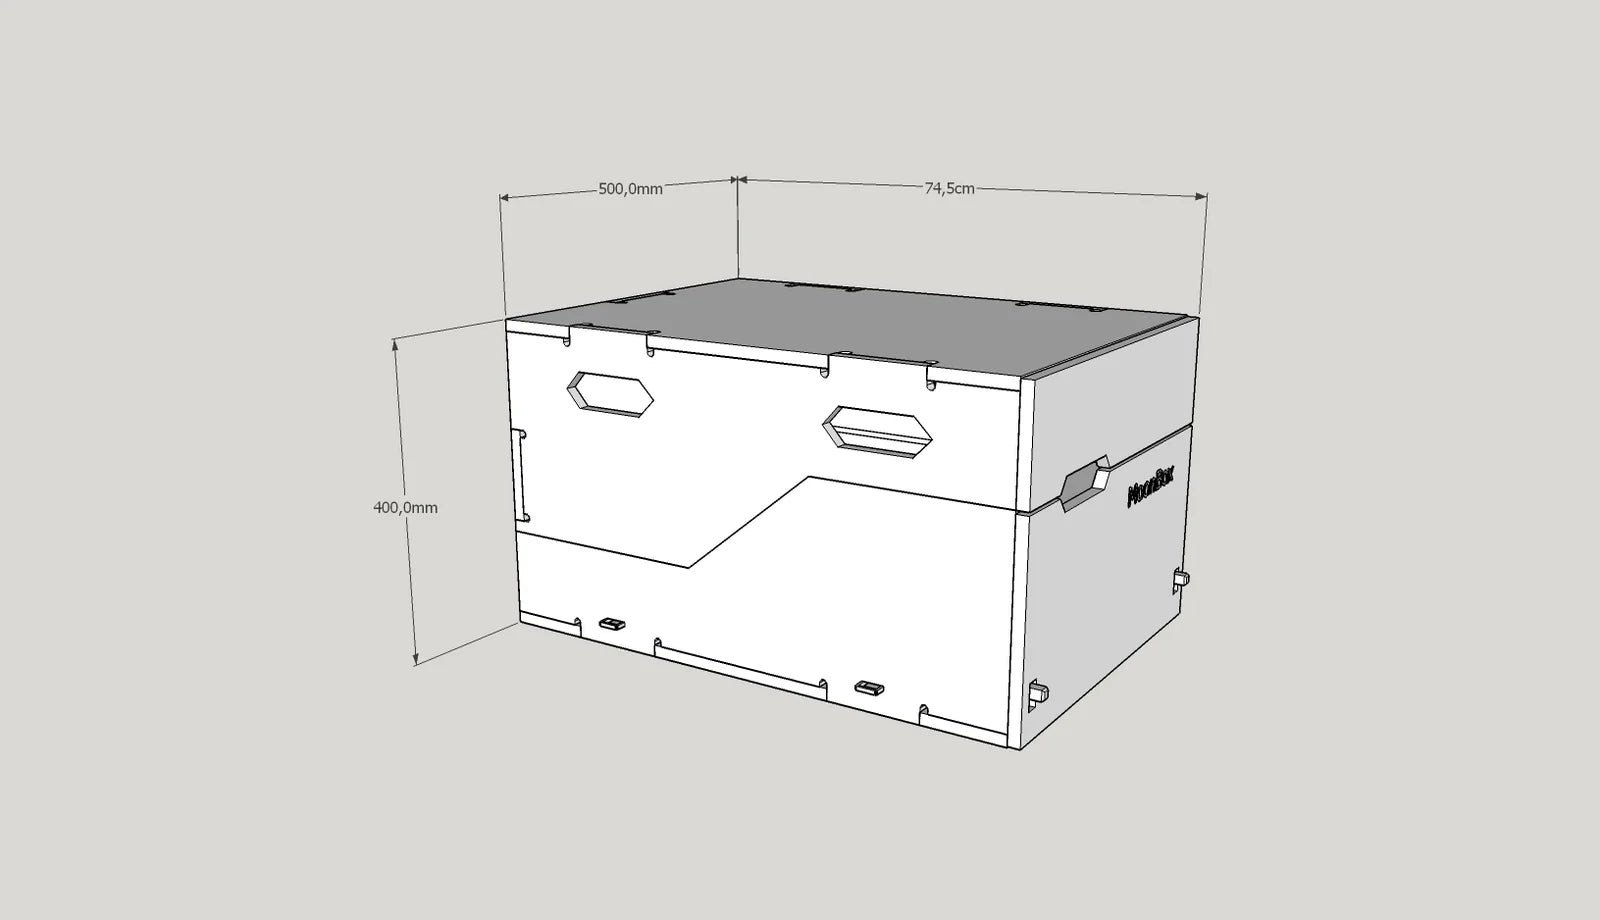 MoonBox KitchenBox – Tragbare Küchenbox 